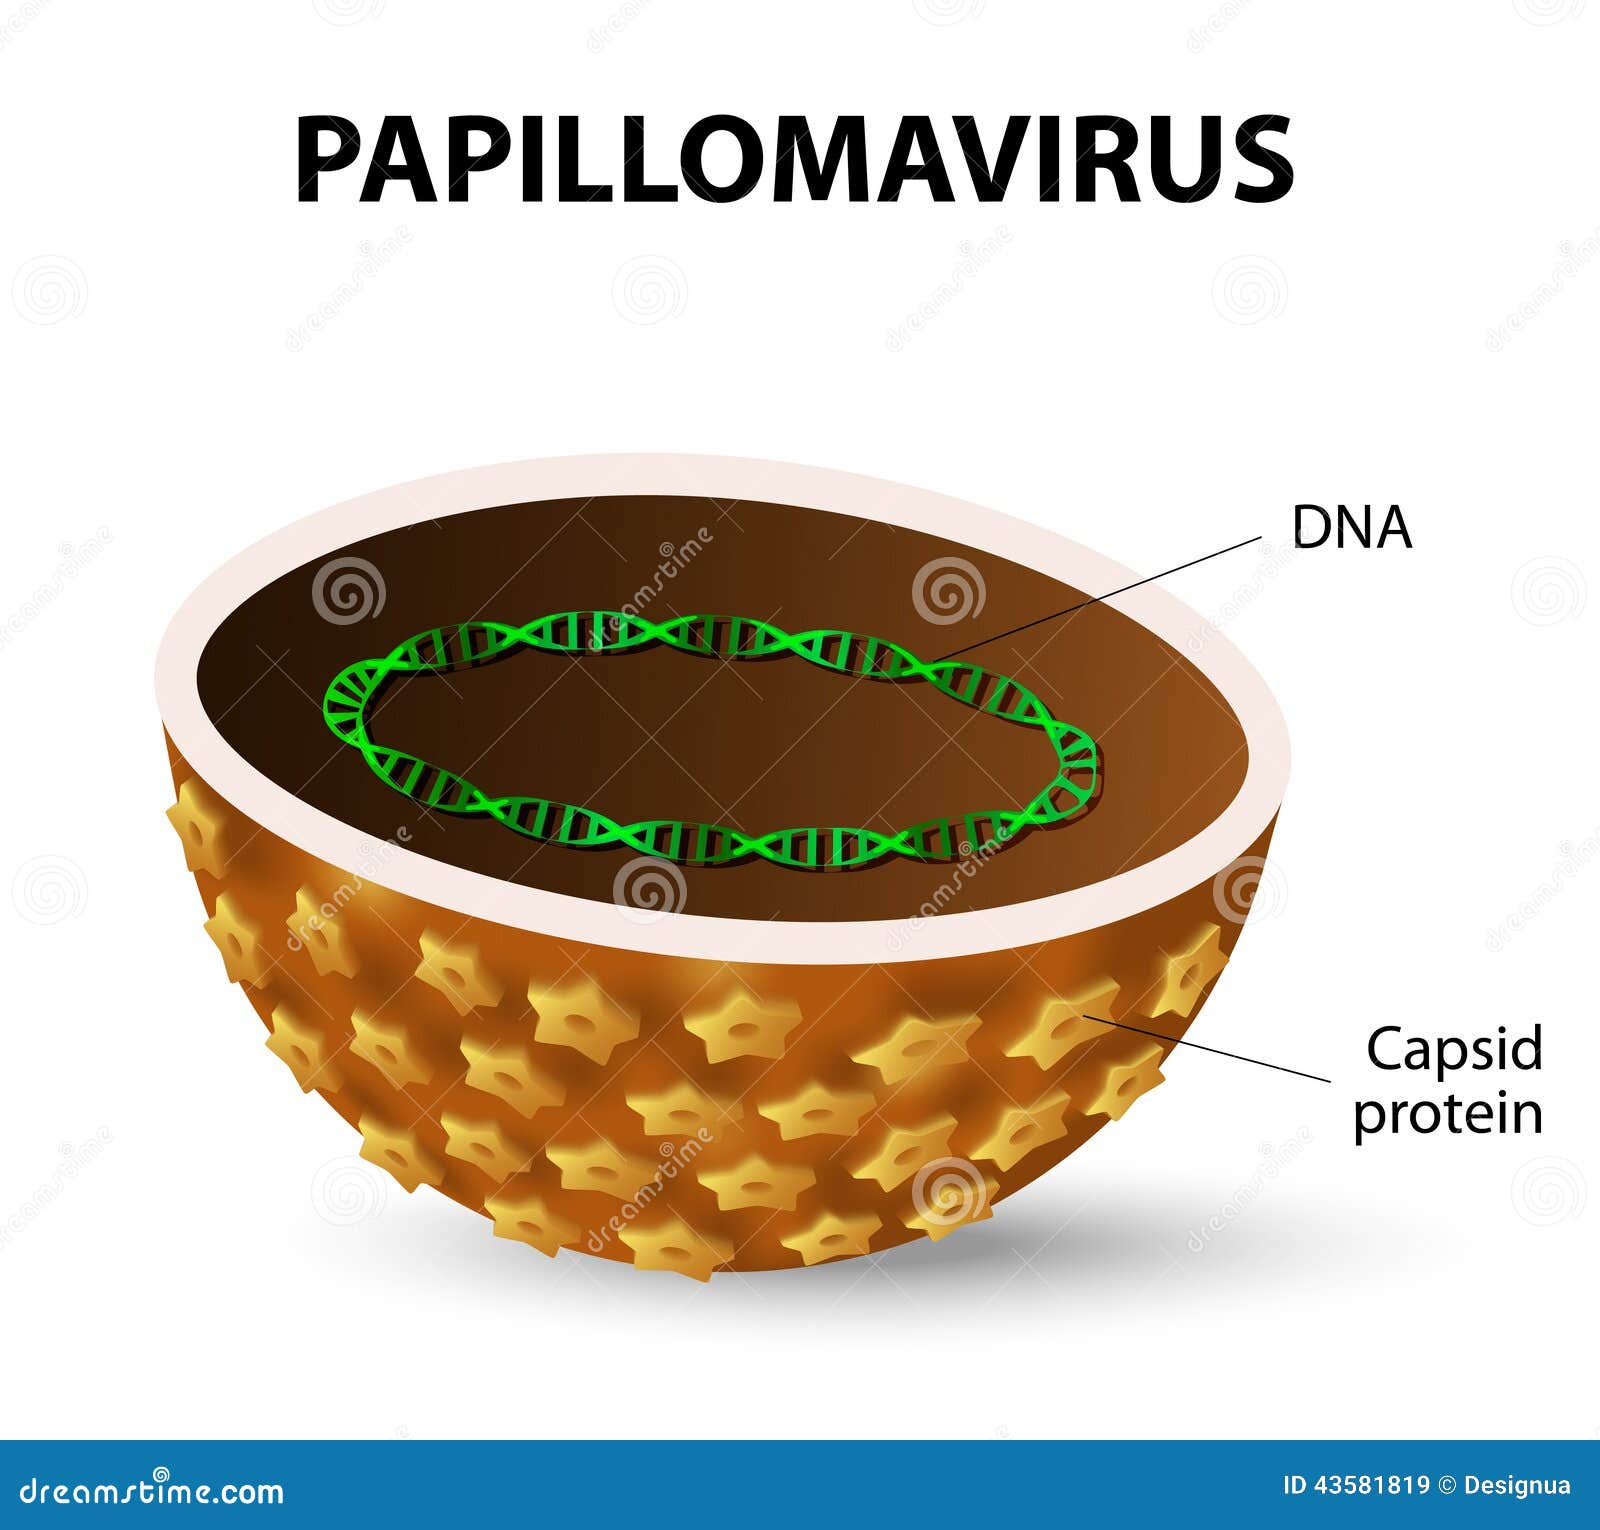 45. papillomavírus vírus hpv rák férfi tünetei